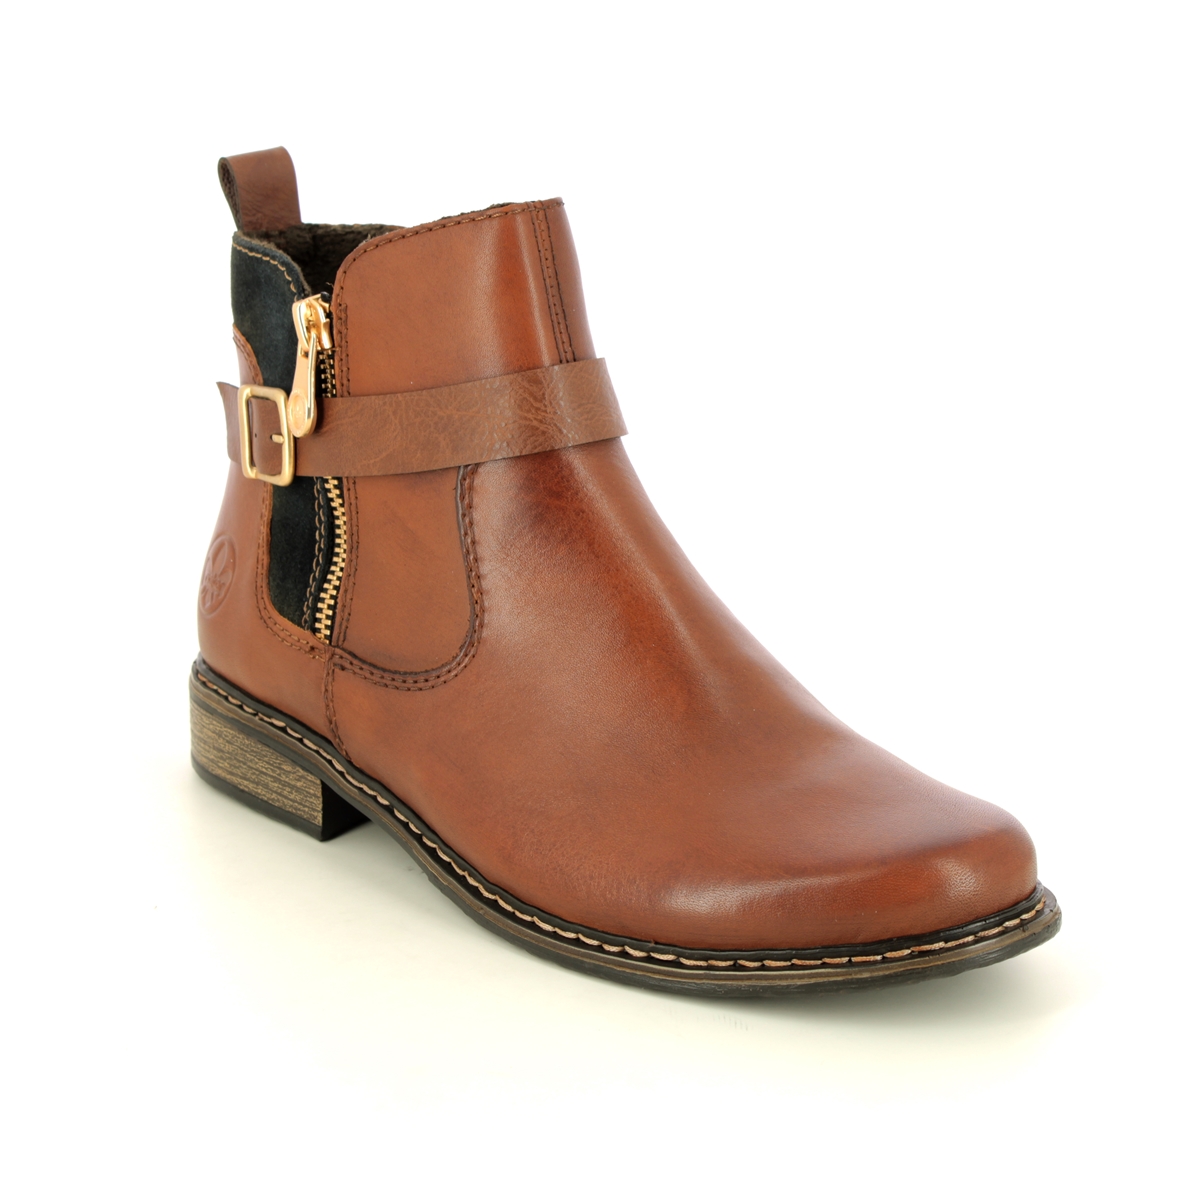 Rieker Peechez Tan Leather Womens Chelsea Boots Z4959-22 In Size 37 In Plain Tan Leather